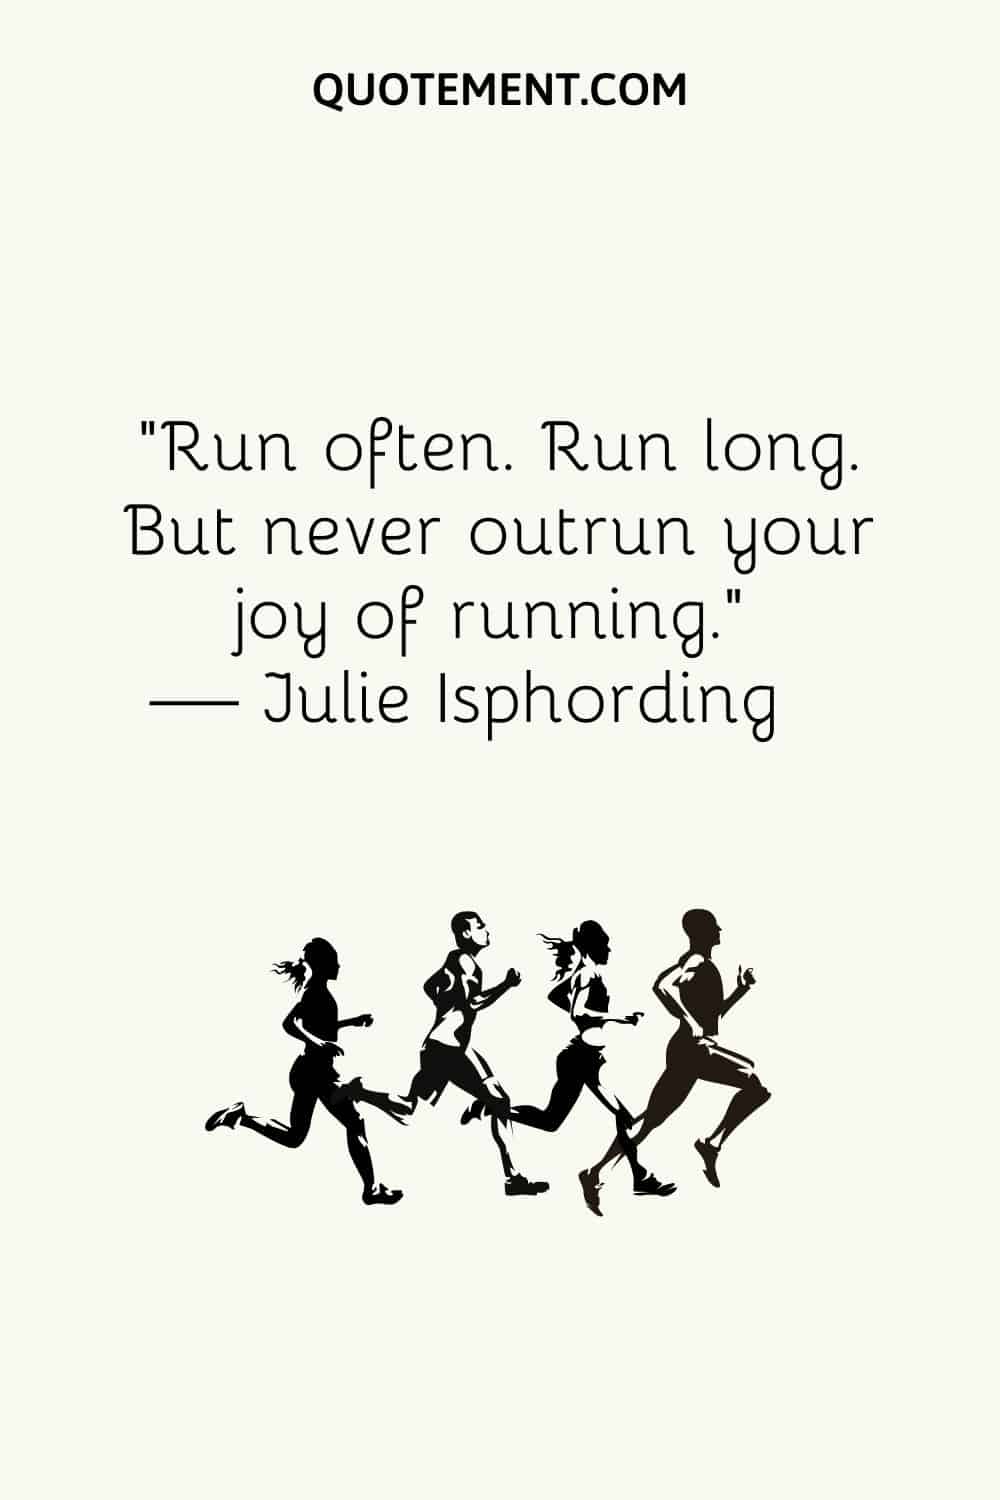 Run often. Run long. But never outrun your joy of running